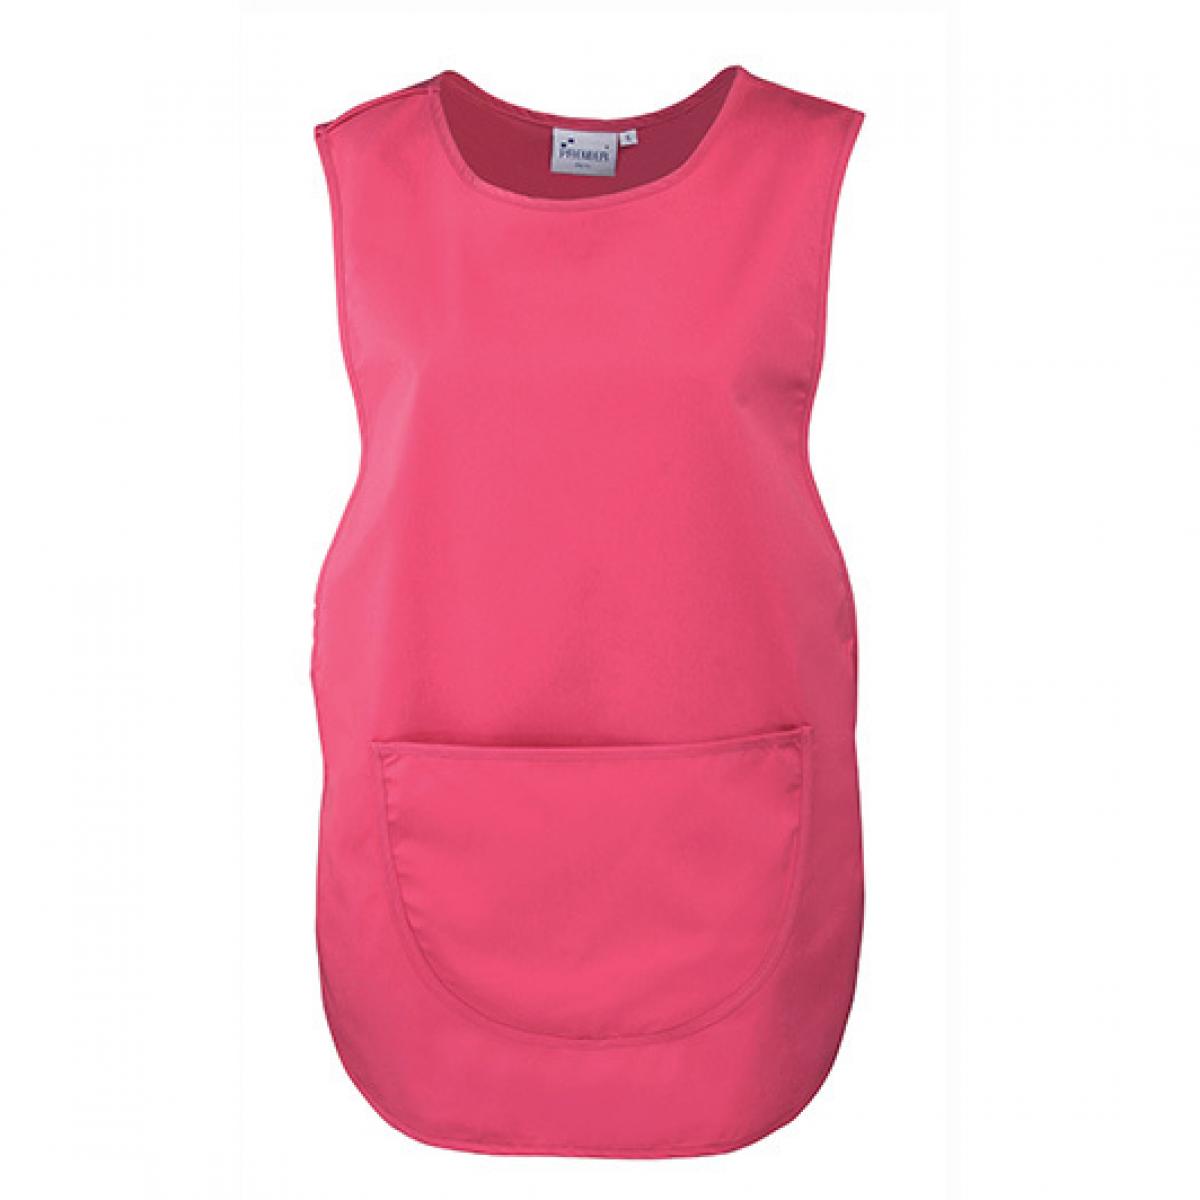 Hersteller: Premier Workwear Herstellernummer: PR171 Artikelbezeichnung: Women`s Pocket Tabard - Waschbar bis 60 °C Farbe: Fuchsia (ca. Pantone 219)